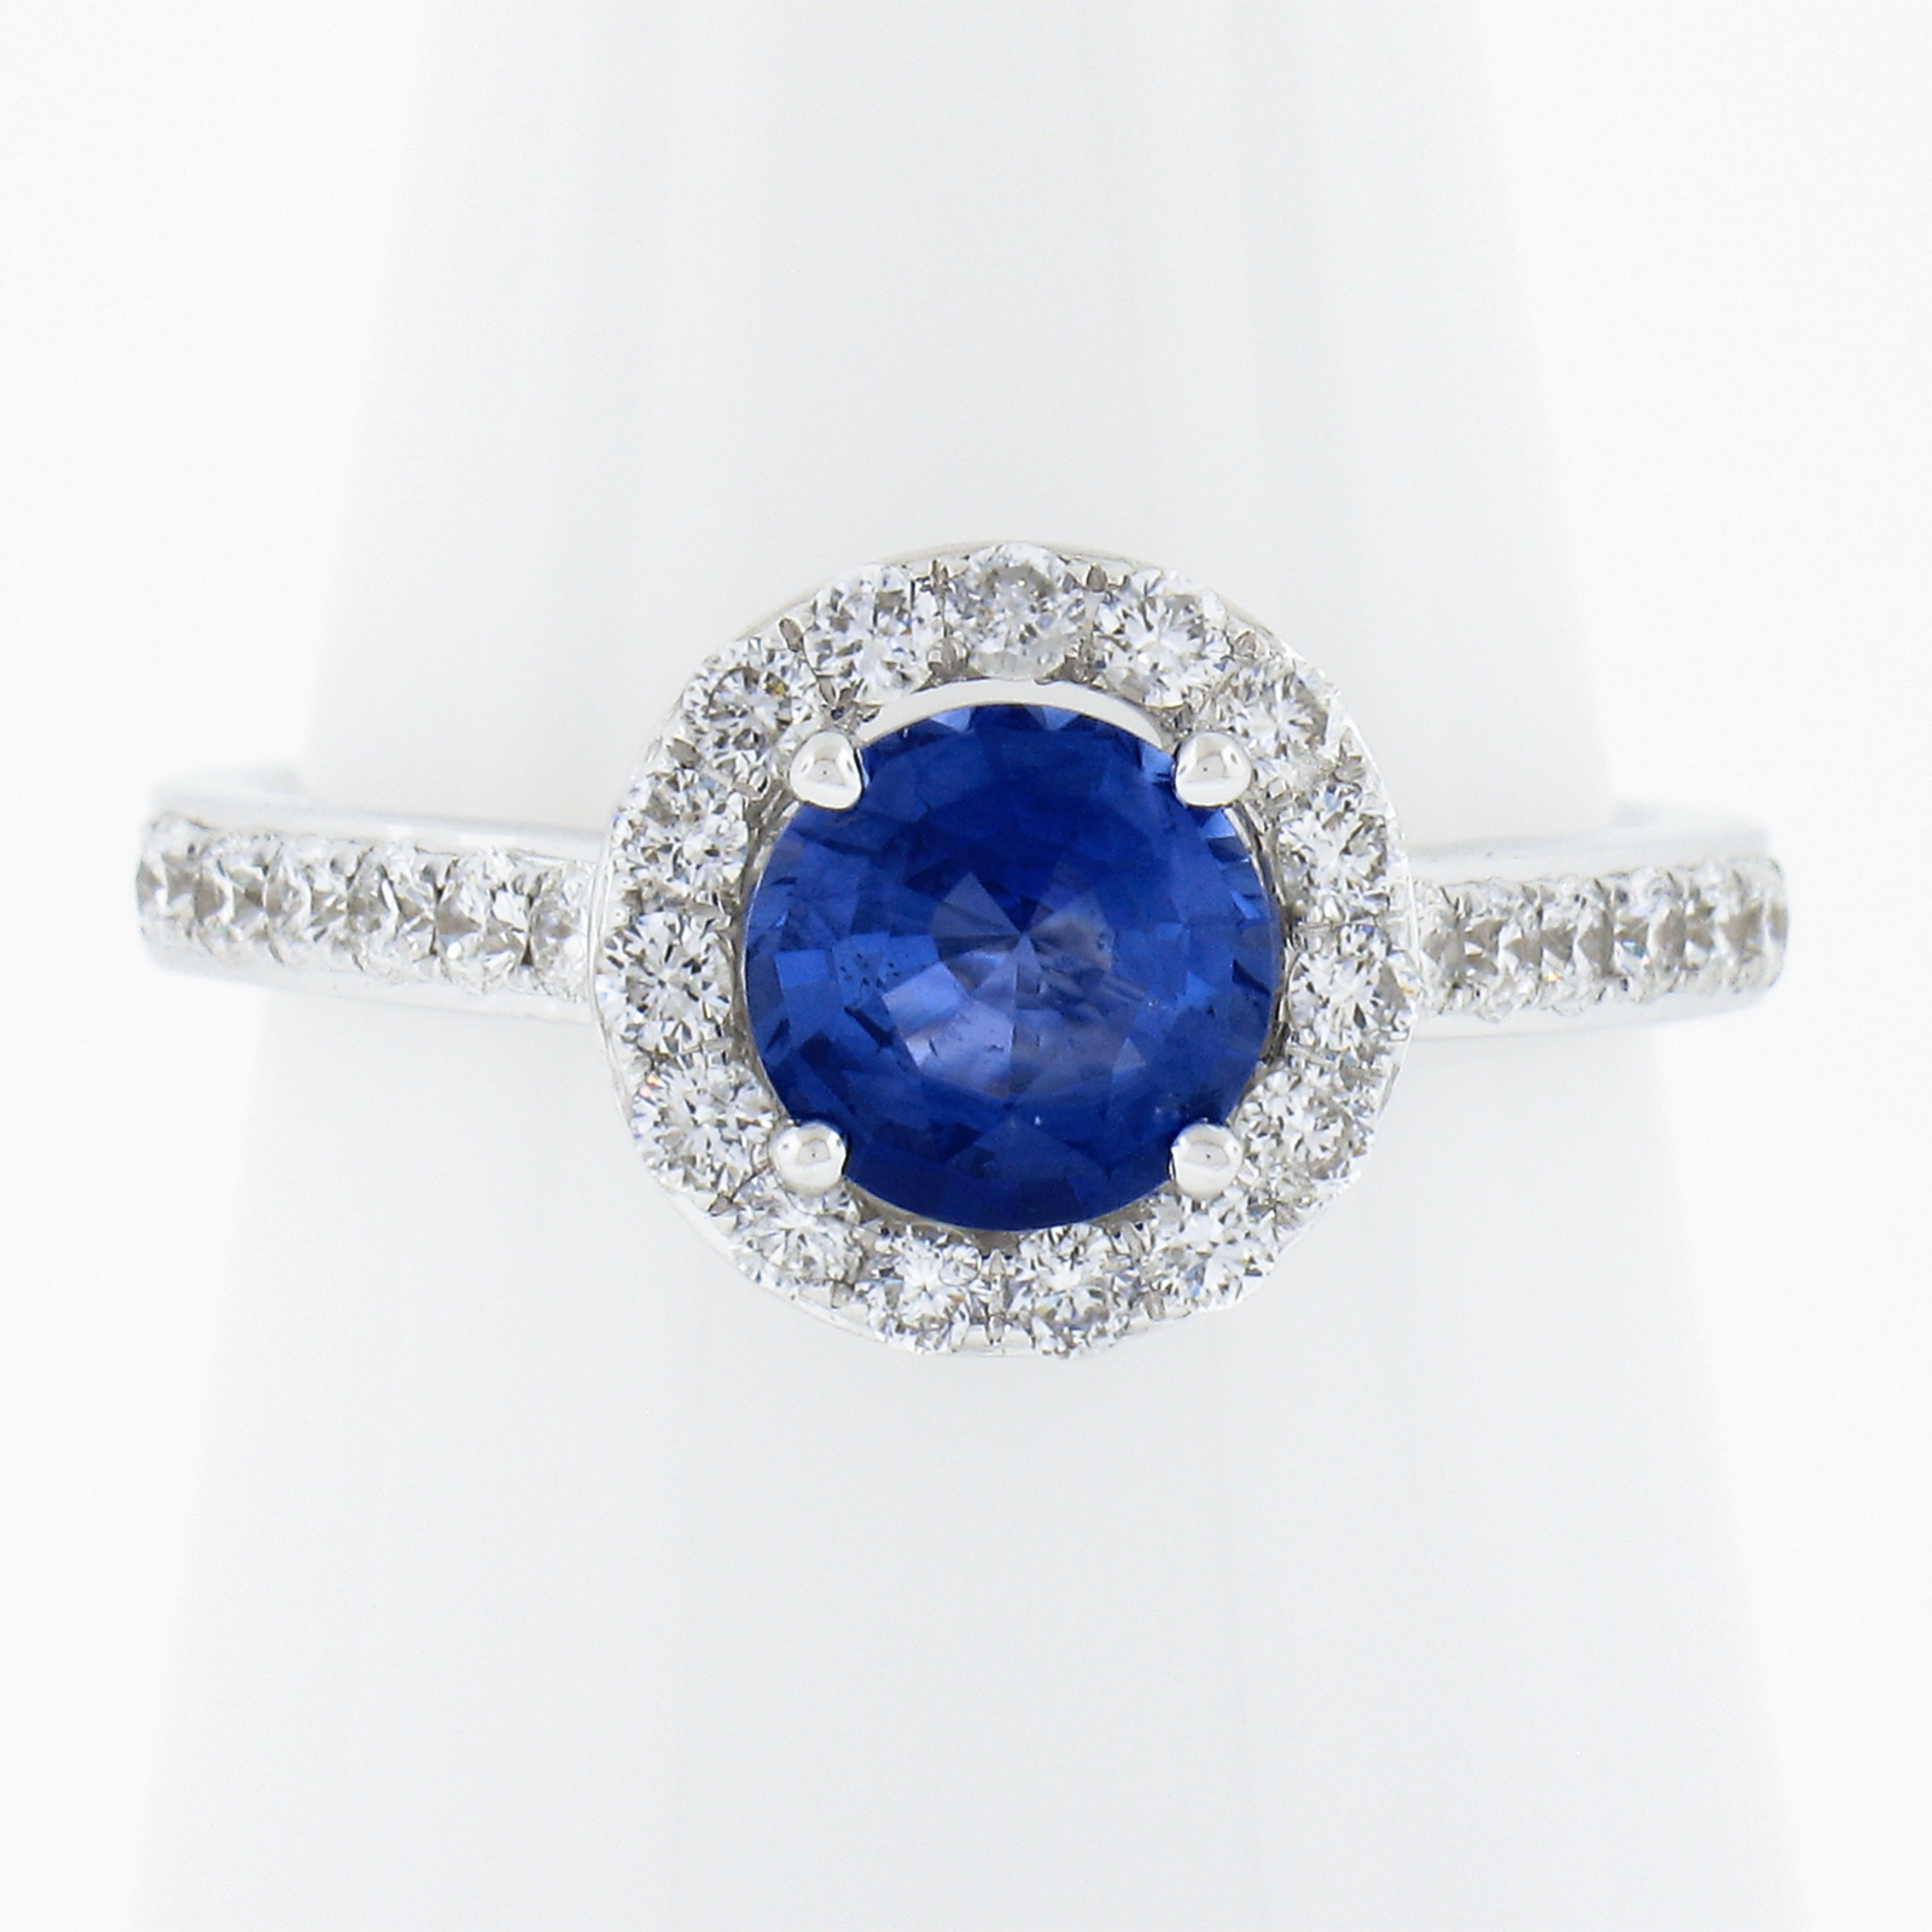 --Pierre(s) :...
(1) Saphir véritable naturel - taille ronde et brillante - serti - couleur bleue -1.11ct (exact - certifié)
** Voir les détails de la certification ci-dessous pour des informations complètes
(41) Diamants naturels authentiques -